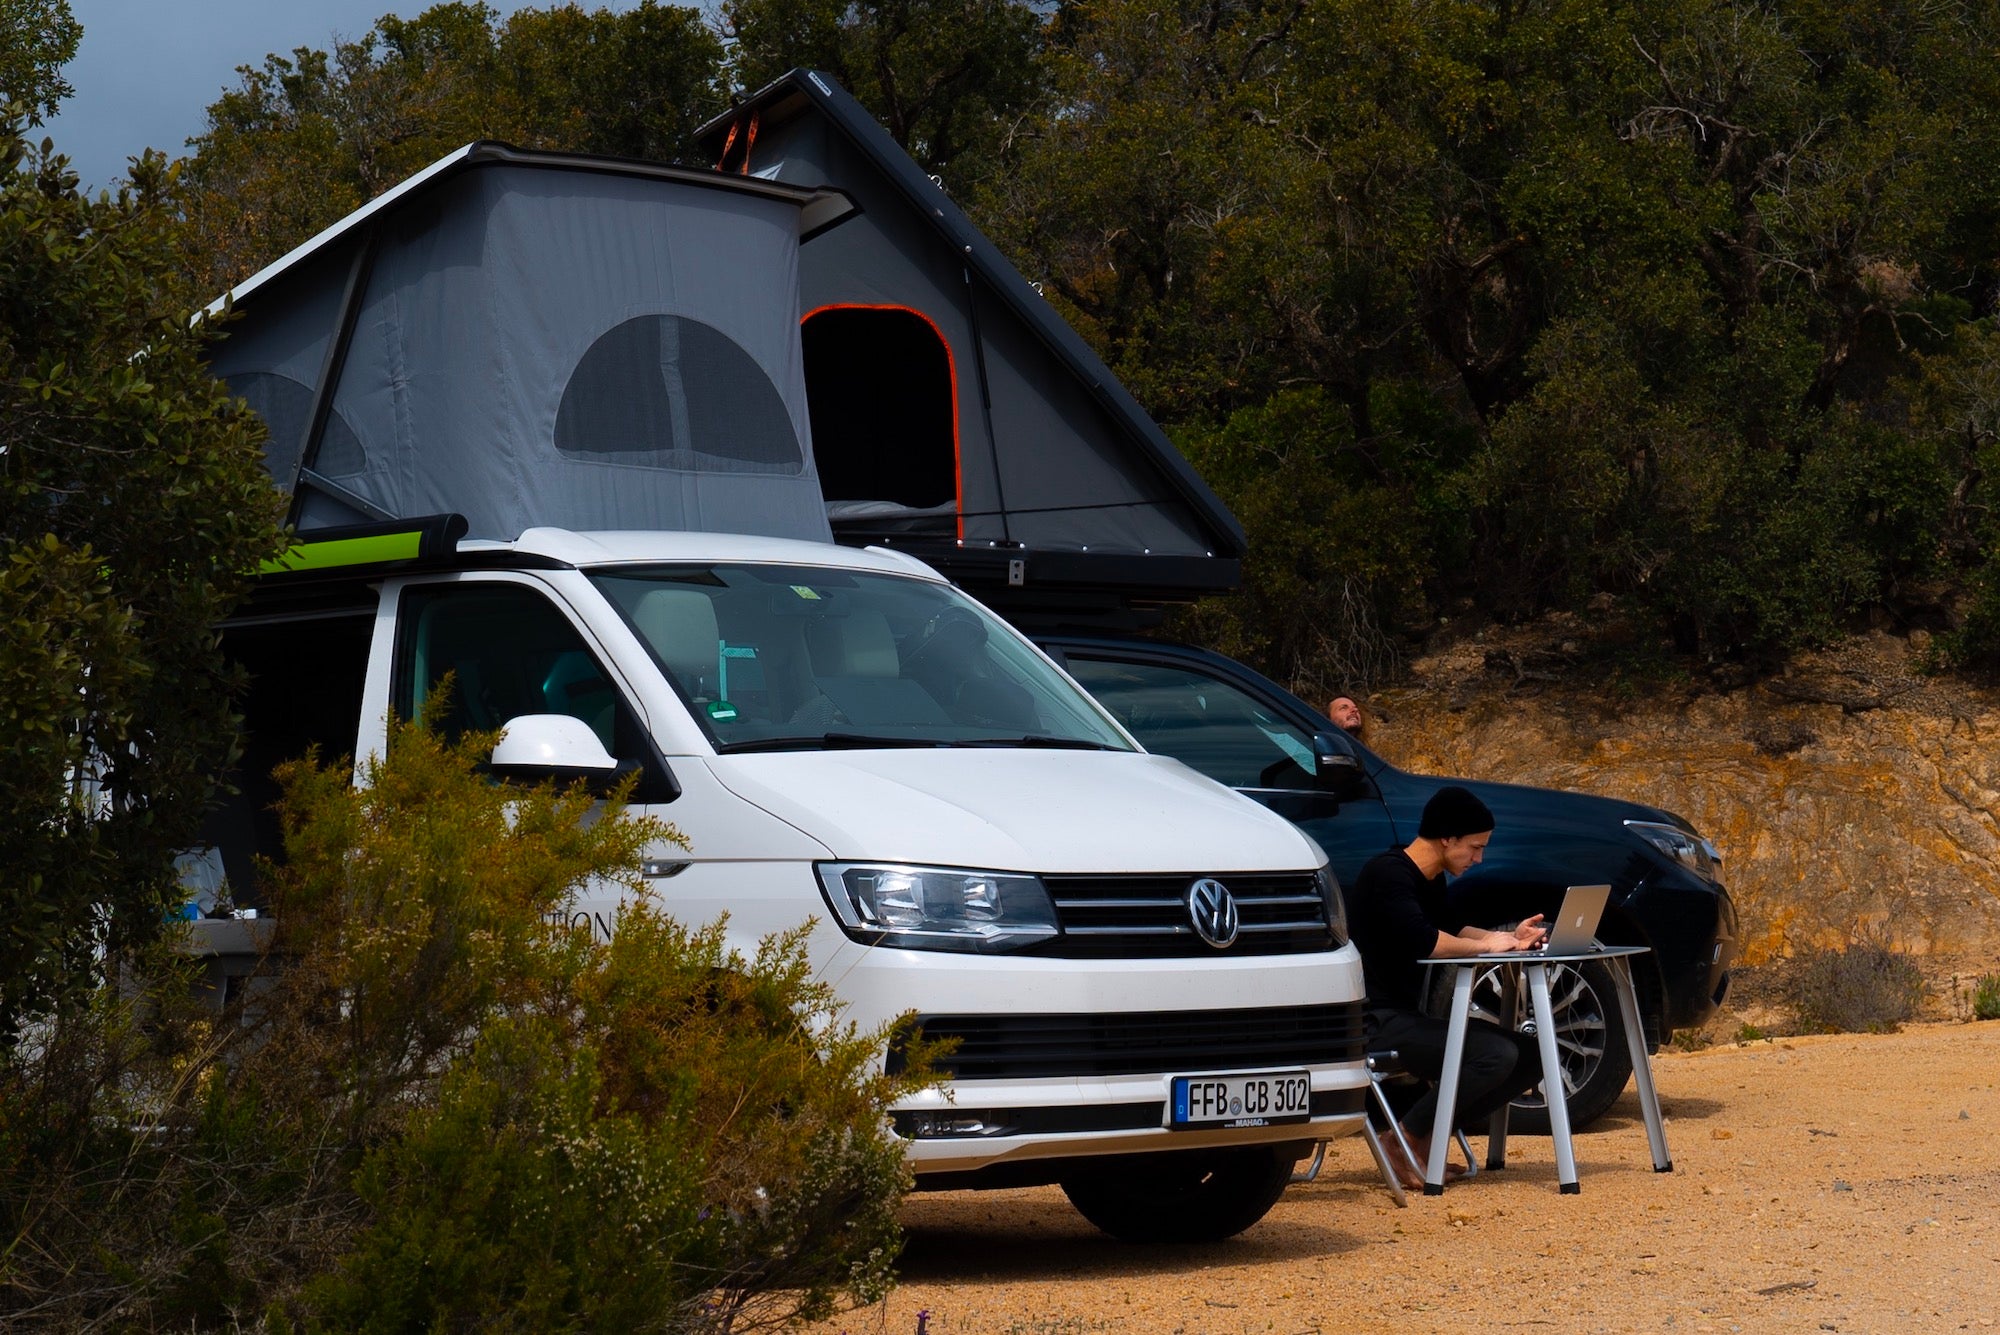 Camping Packliste – Must Haves für einen Campervan Roadtrip